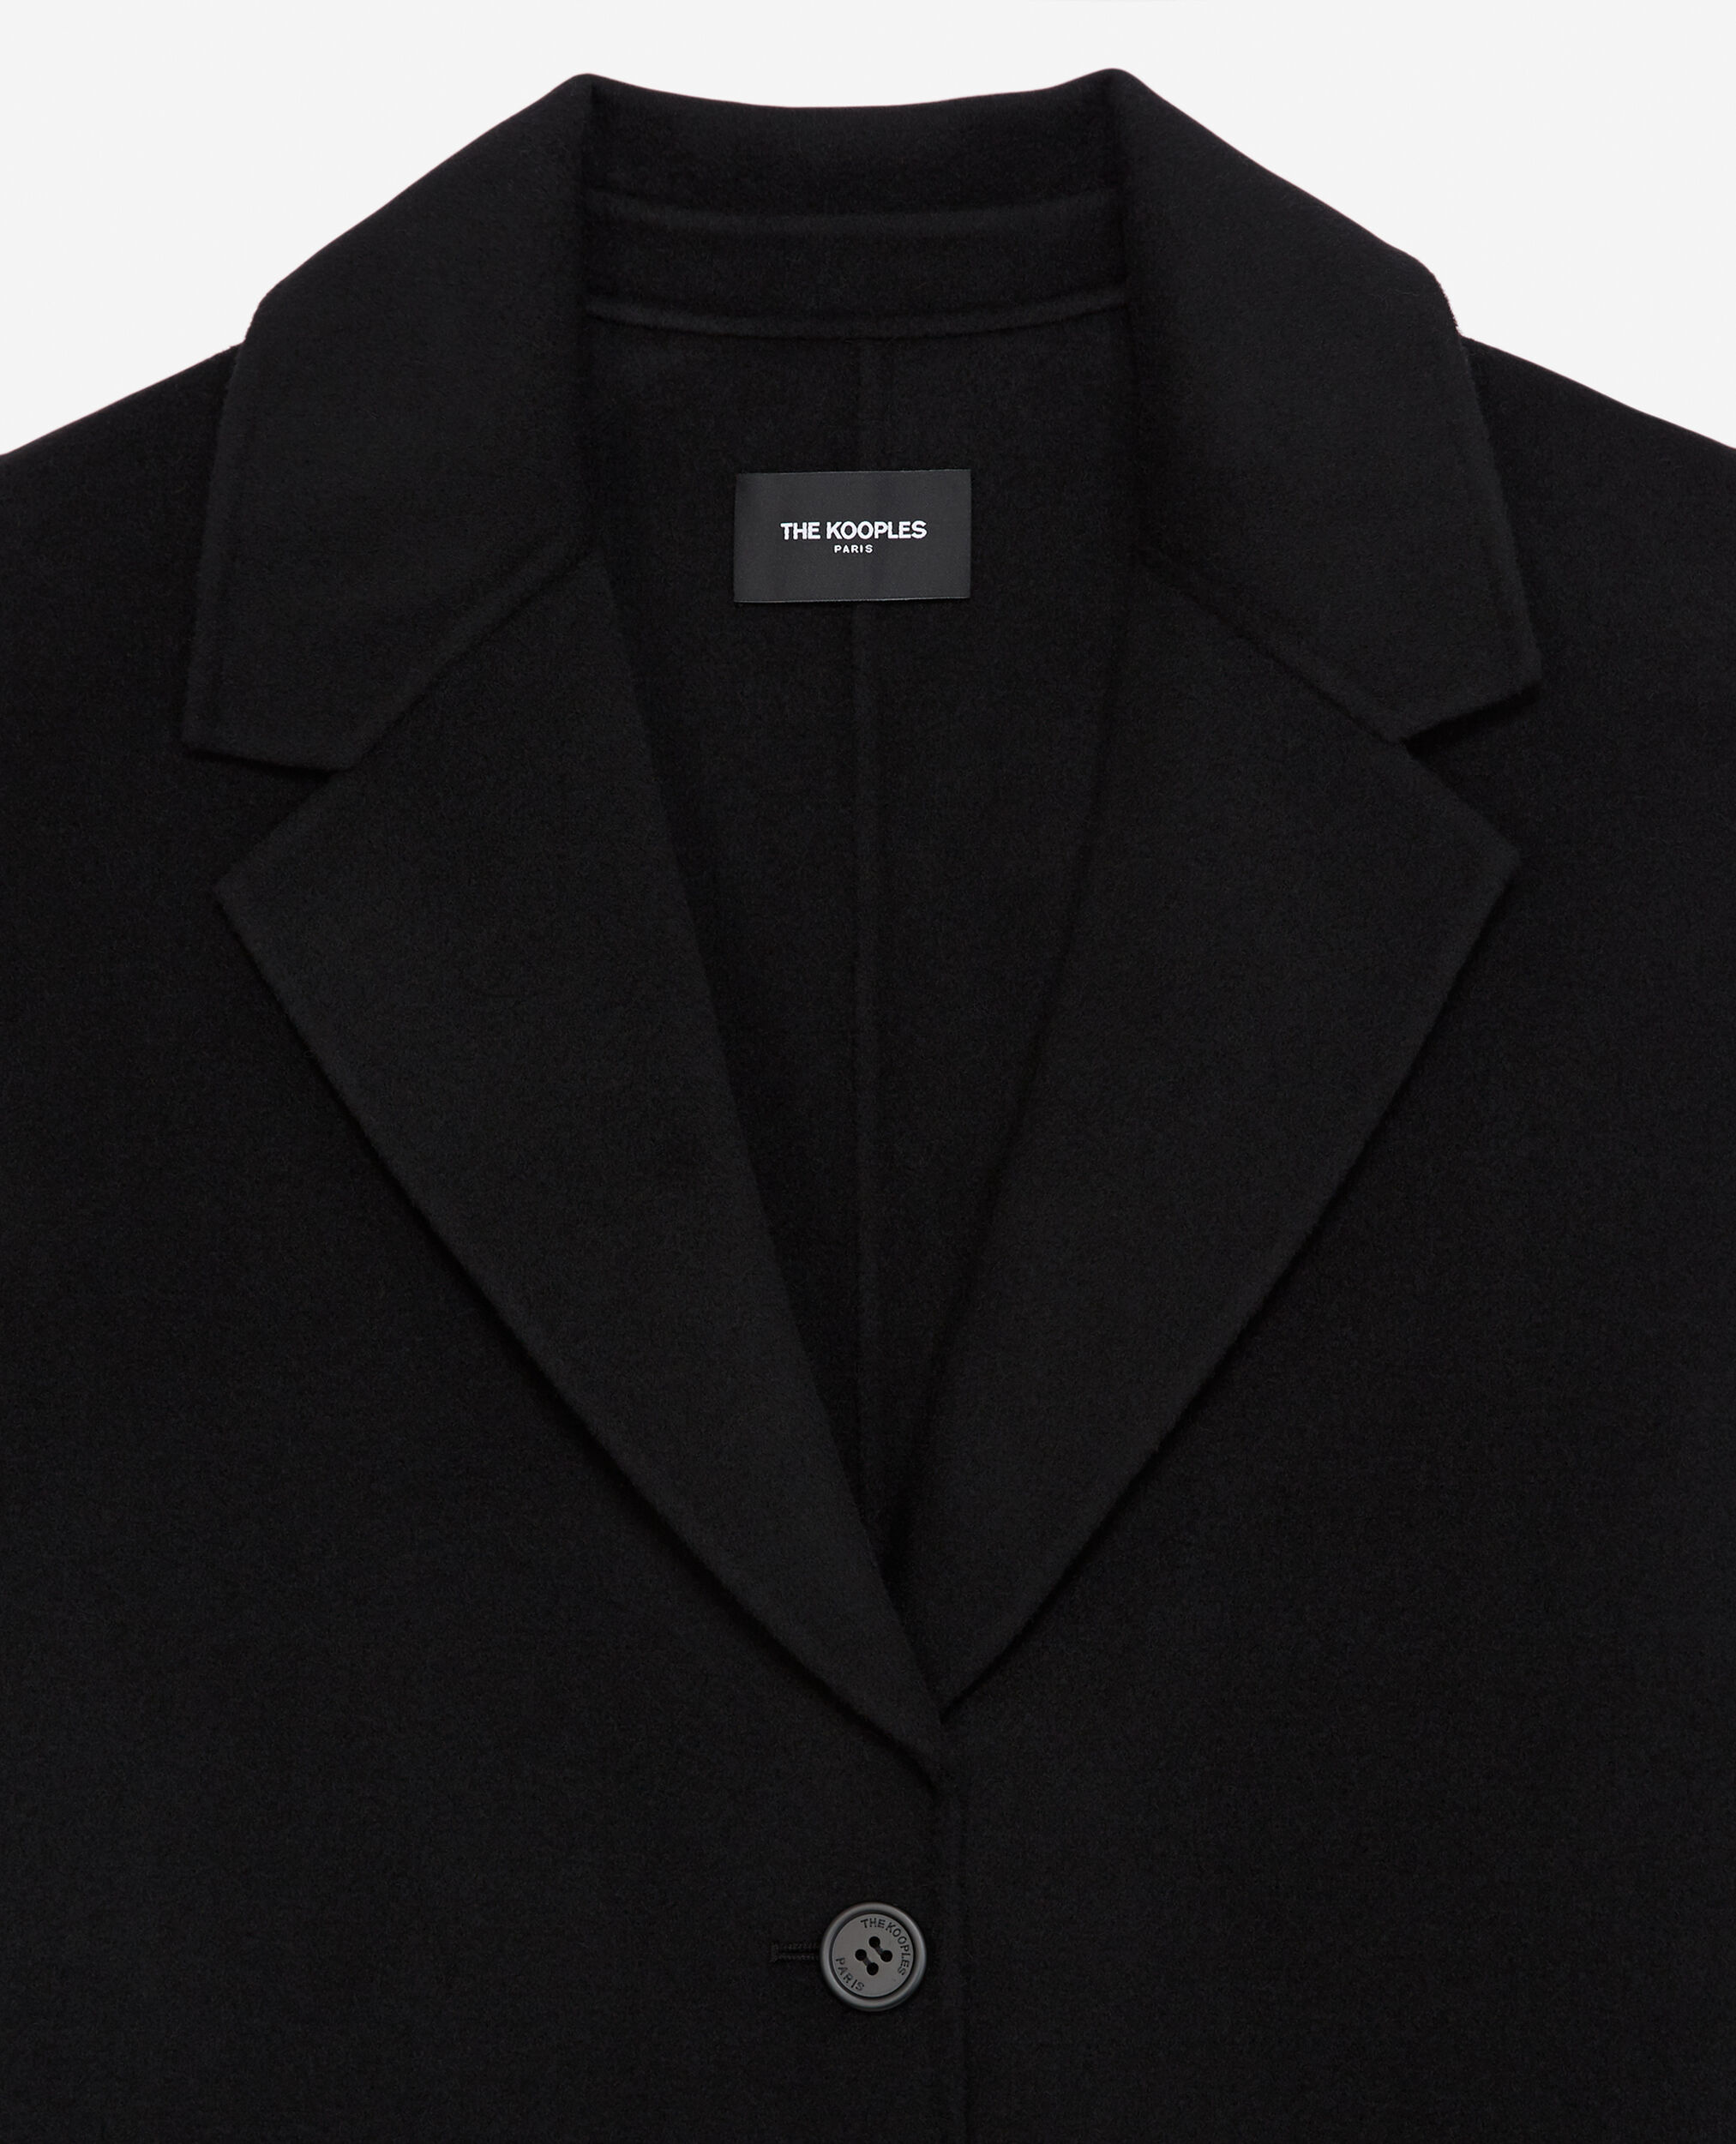 Manteau laine double face noir boutonné, BLACK, hi-res image number null